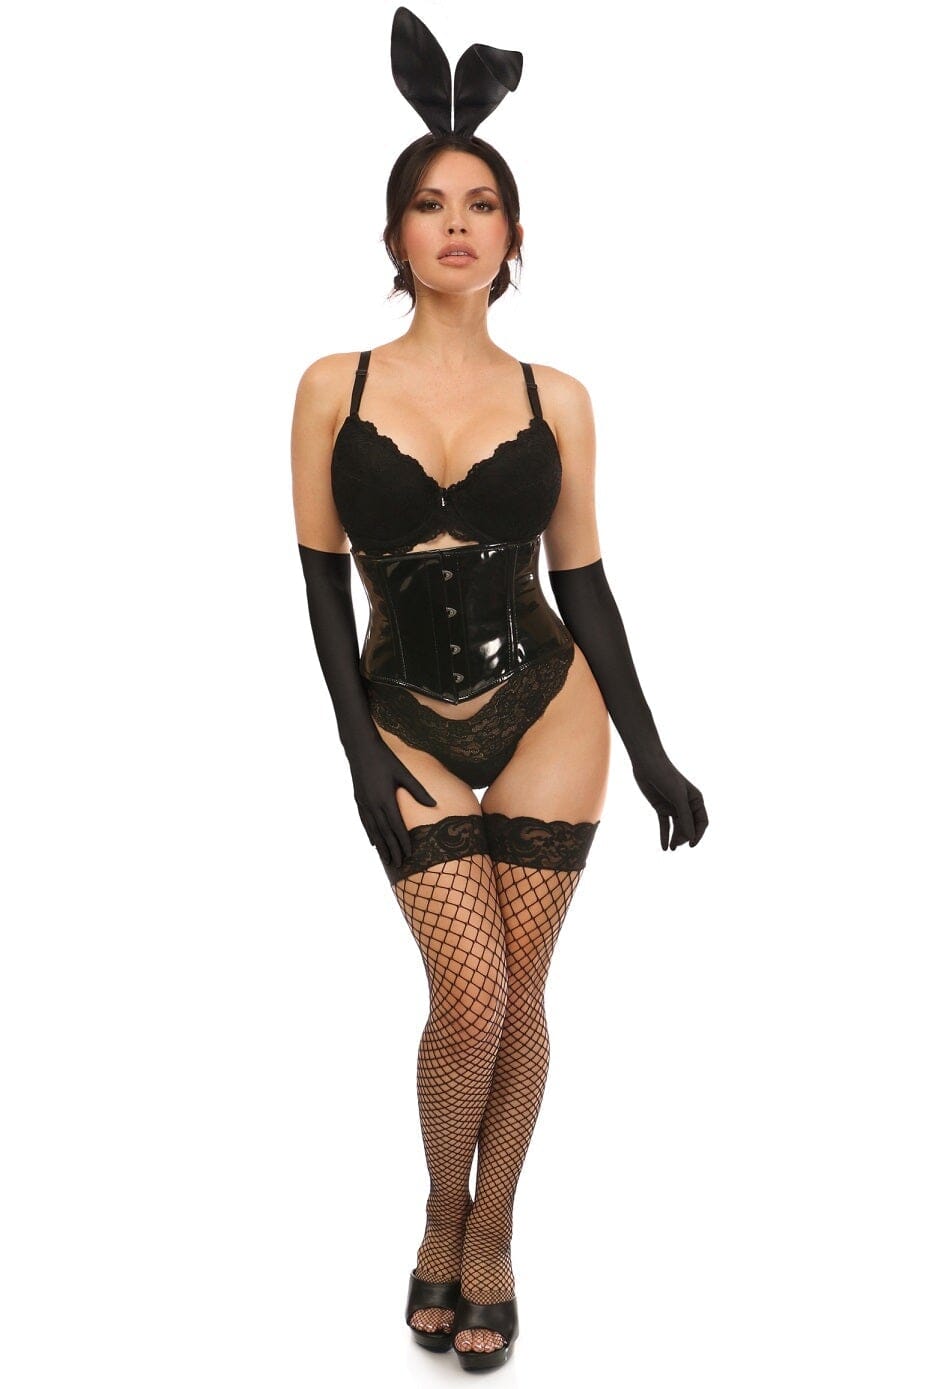 4 Piece Black PVC Bunny Corset Costume-Devil Costumes-Daisy Corsets-SEXYSHOES.COM